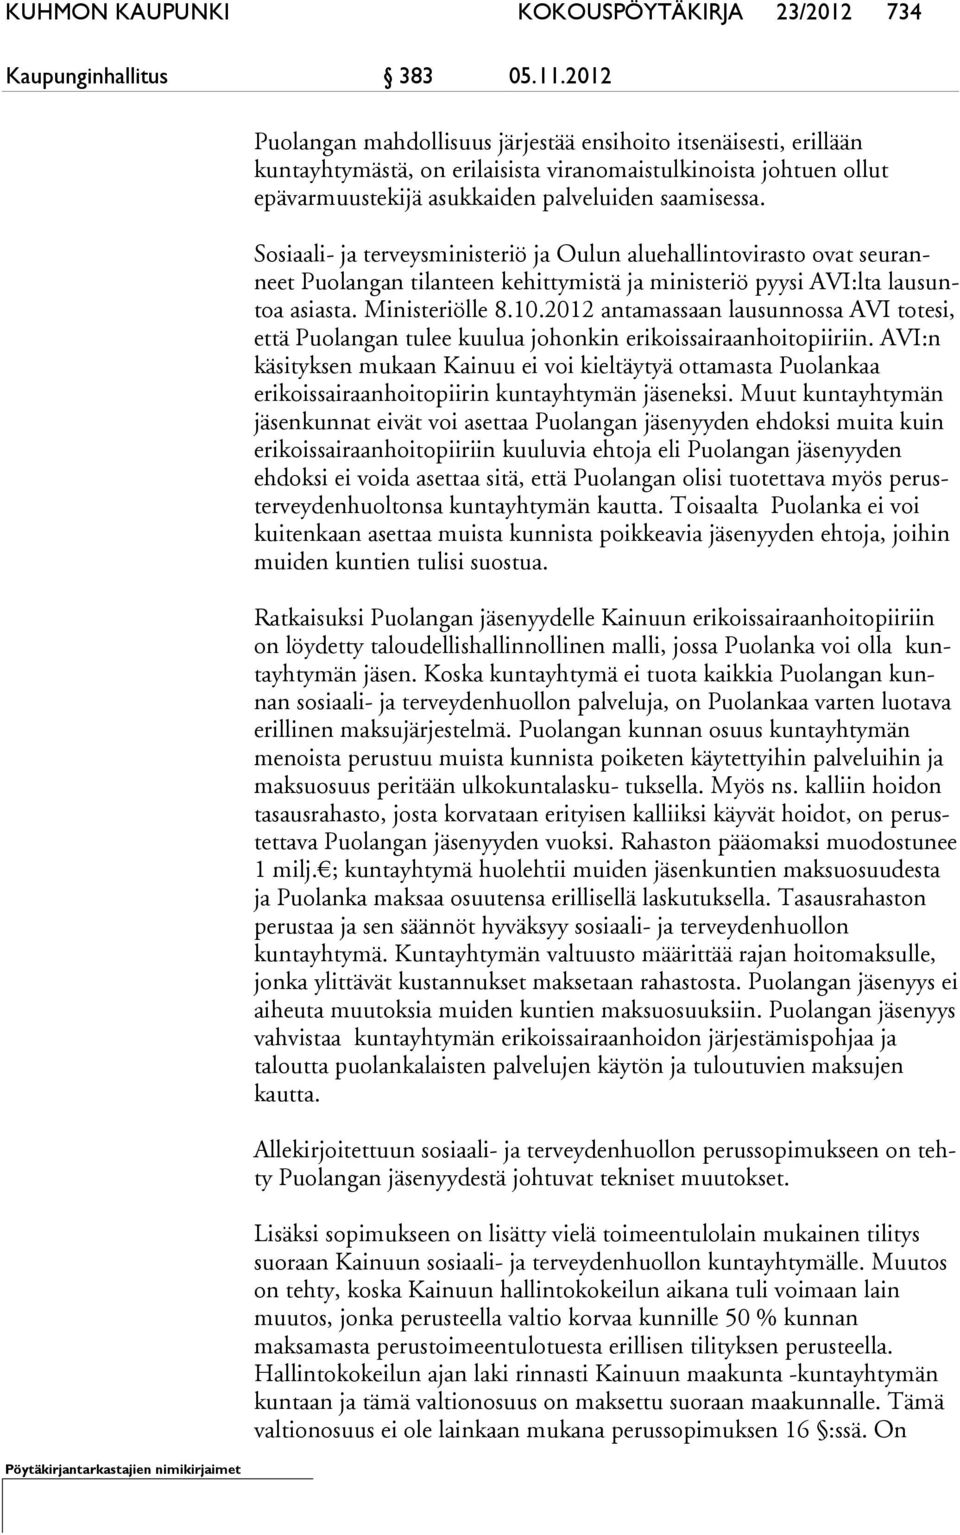 Sosiaali- ja terveysministeriö ja Oulun aluehallintovirasto ovat seu ranneet Puolangan tilanteen kehittymistä ja ministeriö pyysi AVI:lta lau suntoa asiasta. Ministeriölle 8.10.